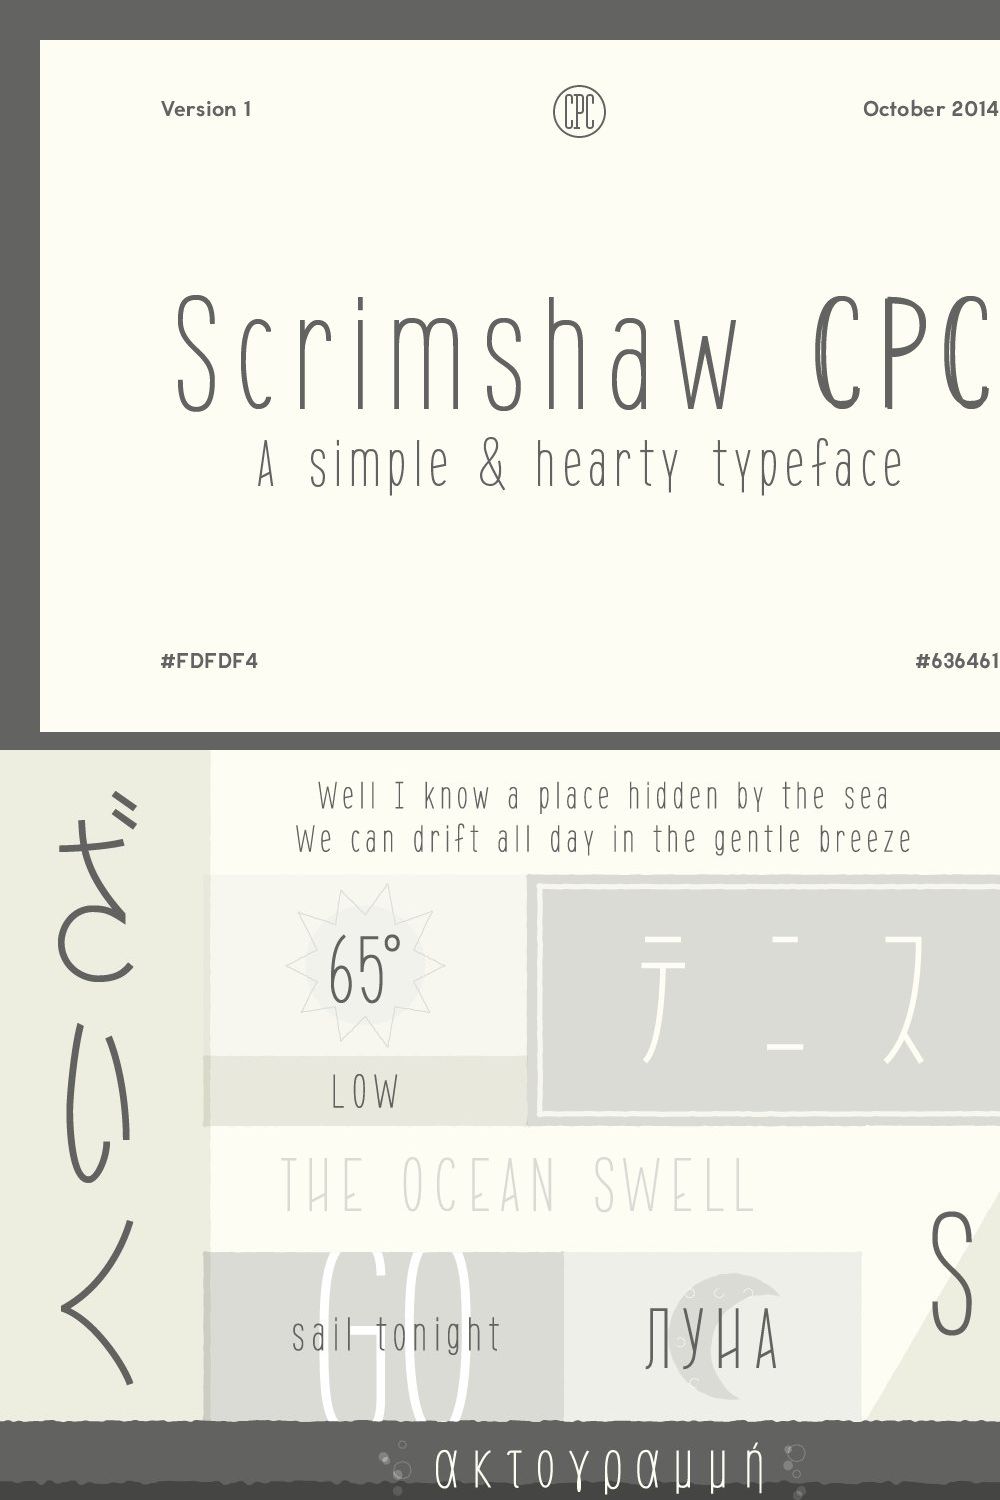 Scrimshaw CPC pinterest preview image.